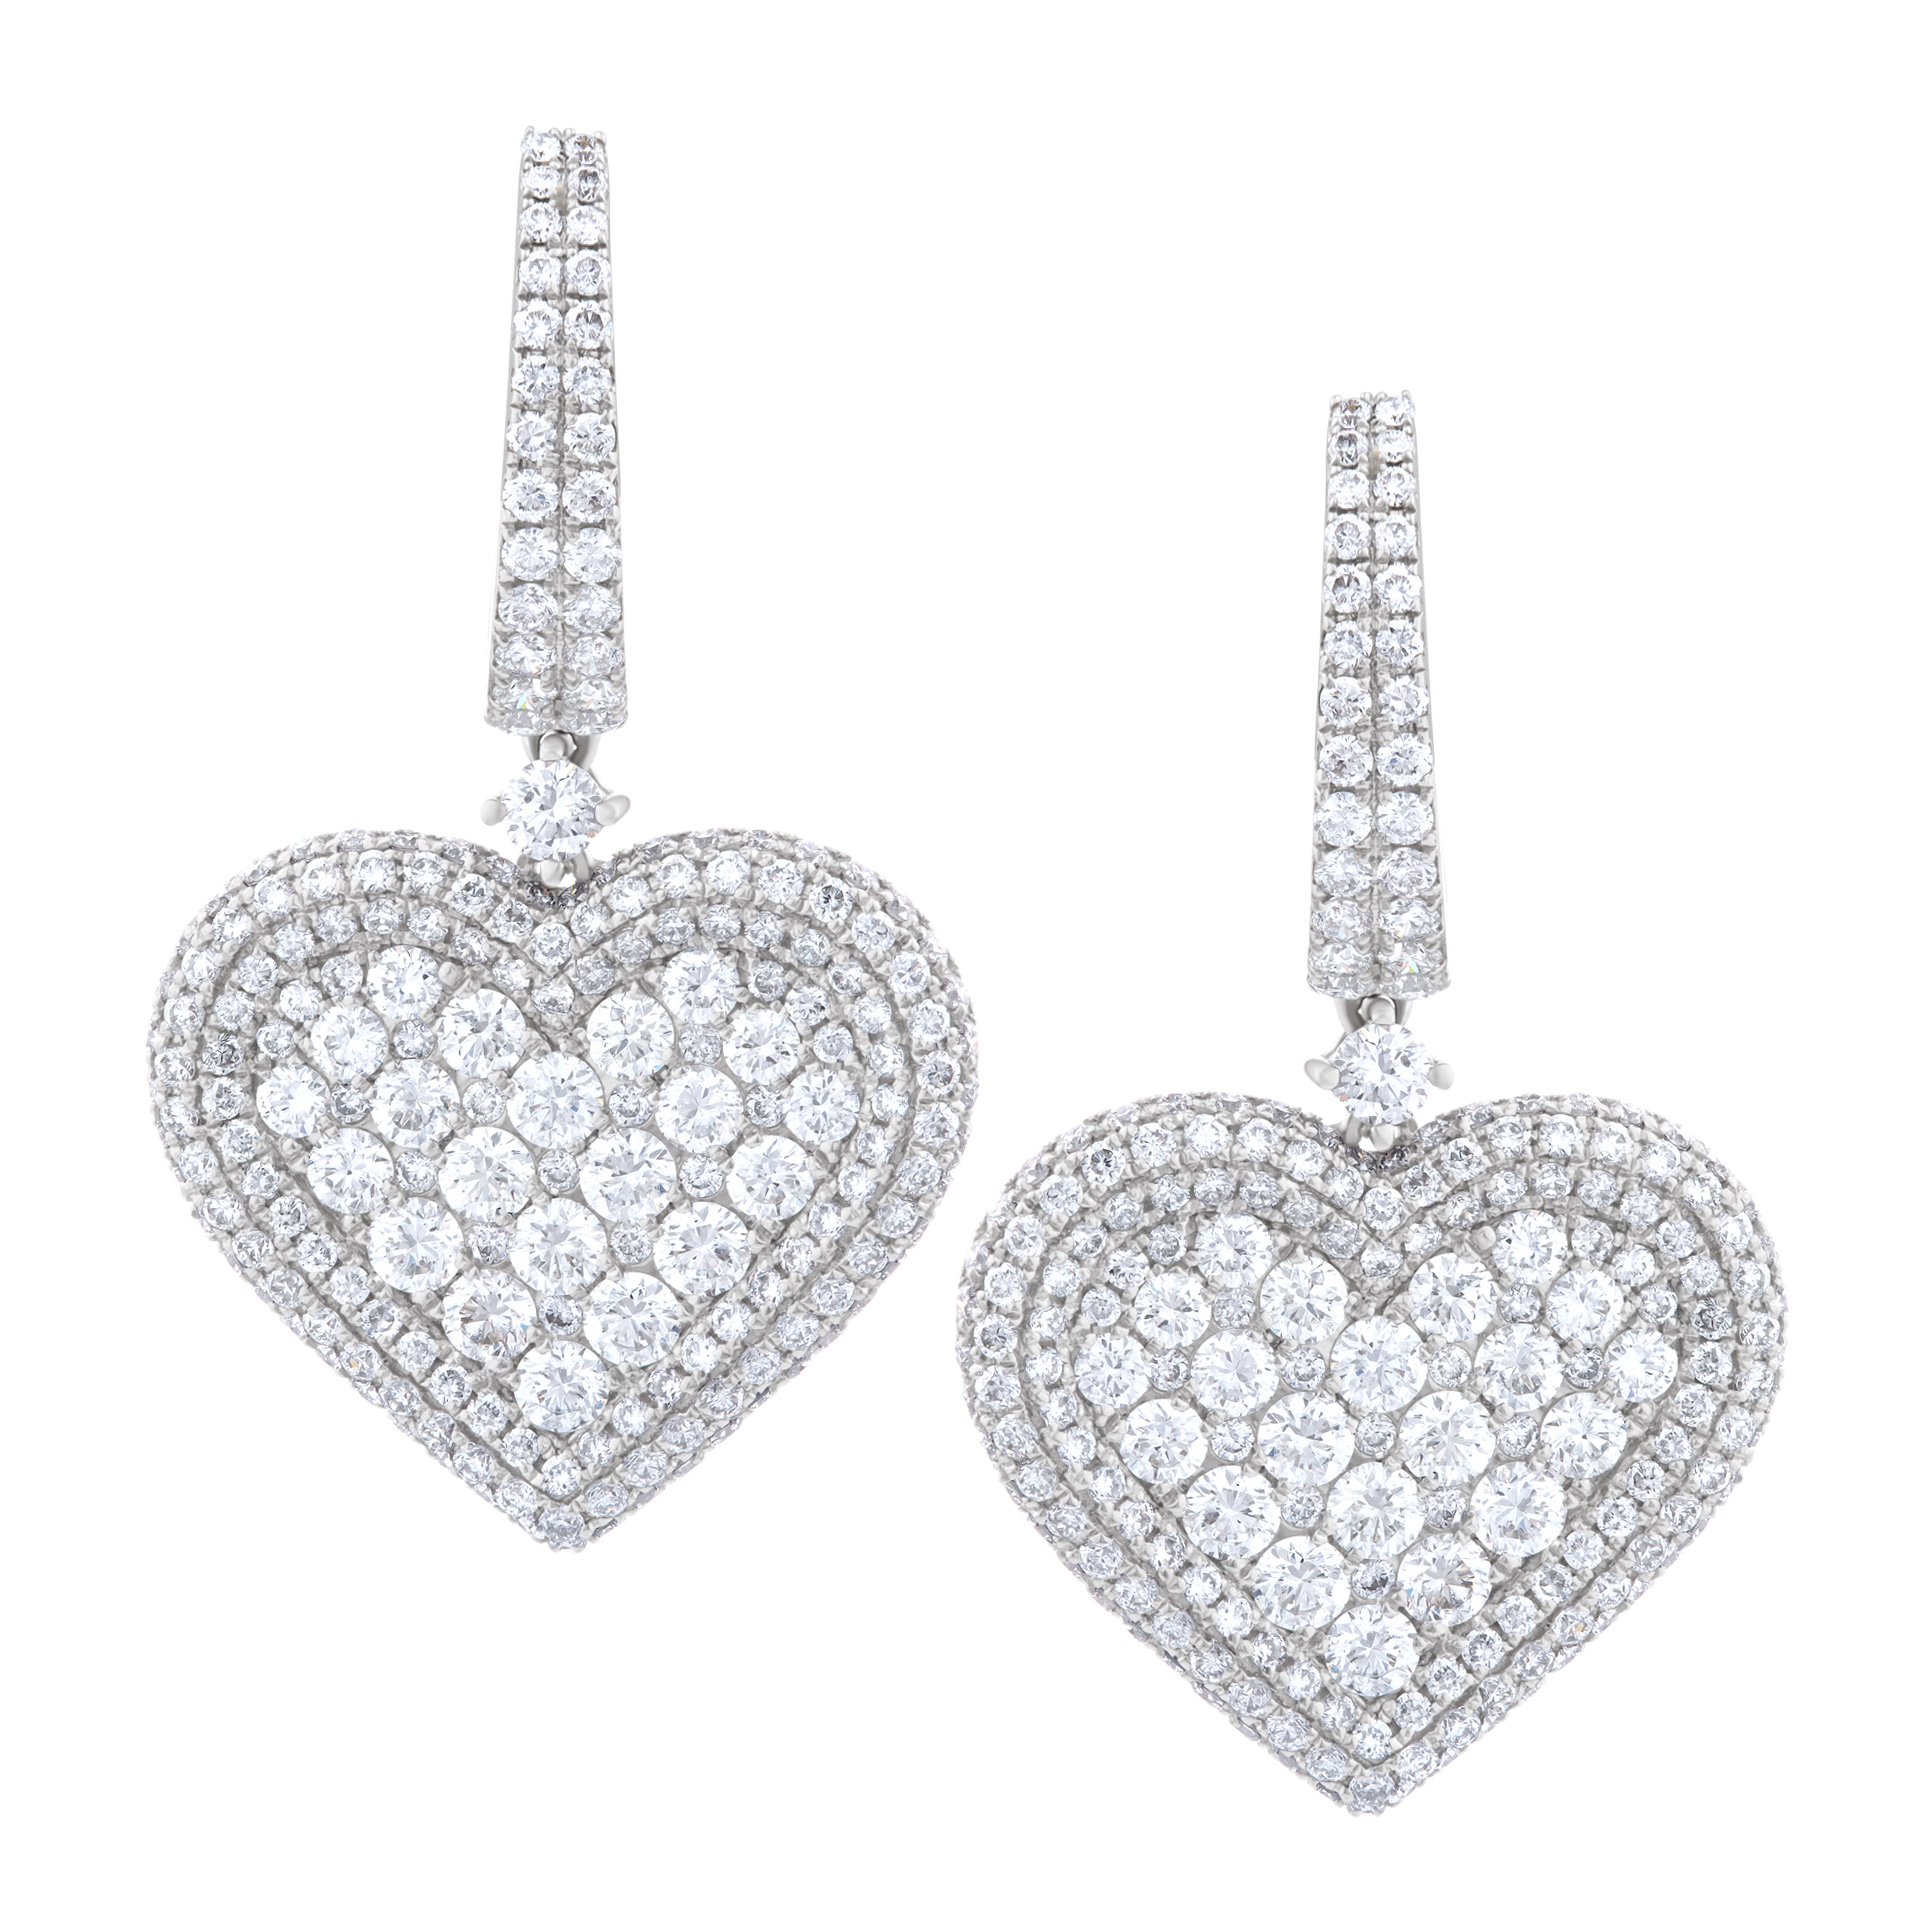 Heart drop diamond earrings in 18k.